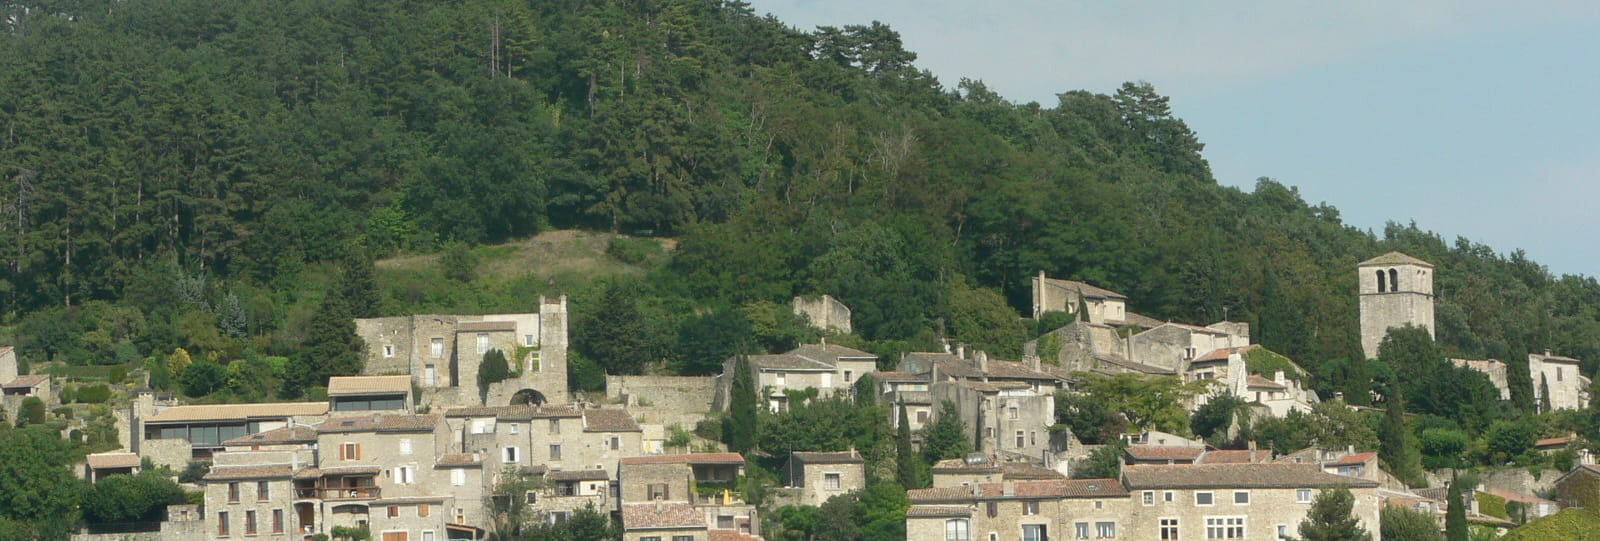 Vieux village